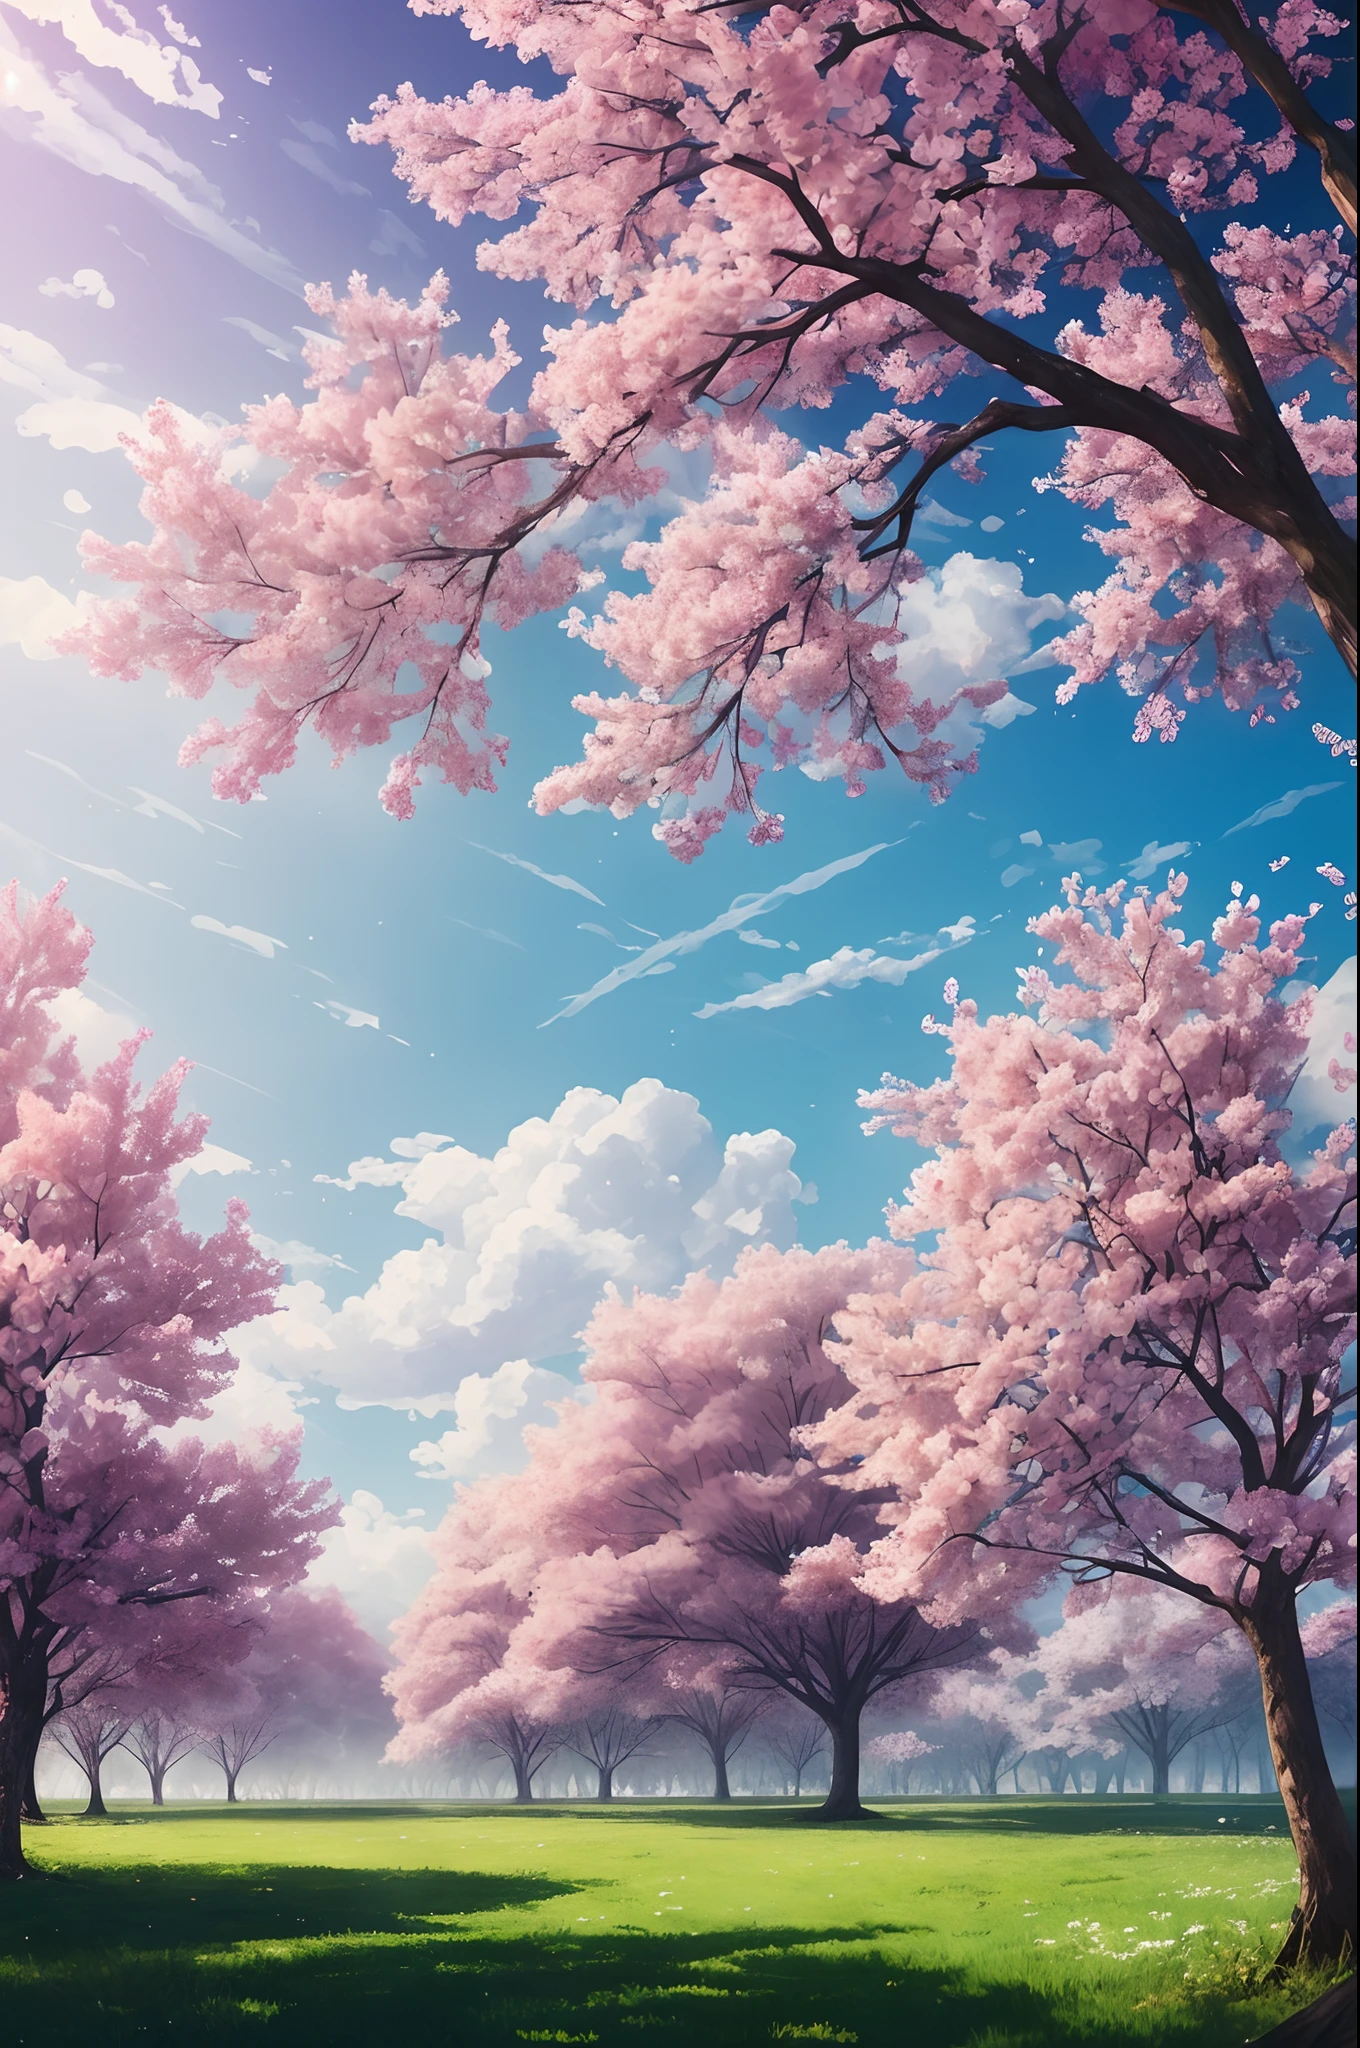 有很多粉紅色的樹, 廣闊的天空, 白雲 , 花瓣 , 開花, 美感寧靜幸福, 漫射光, 上帝射线, 色差, 焦散, 高光散射,傑作, 最好的品質, 高品質, 非常詳細 CG unity 8k wallpaper, 開花的風景, 散景, 景深, 高動態範圍, 盛開, 色差 ,逼真的,非常詳細, ArtStation 上的熱門話題, cgsocial 的趨勢, 錯綜複雜, 高細節, 戲劇性, midjourney 的艺术作品